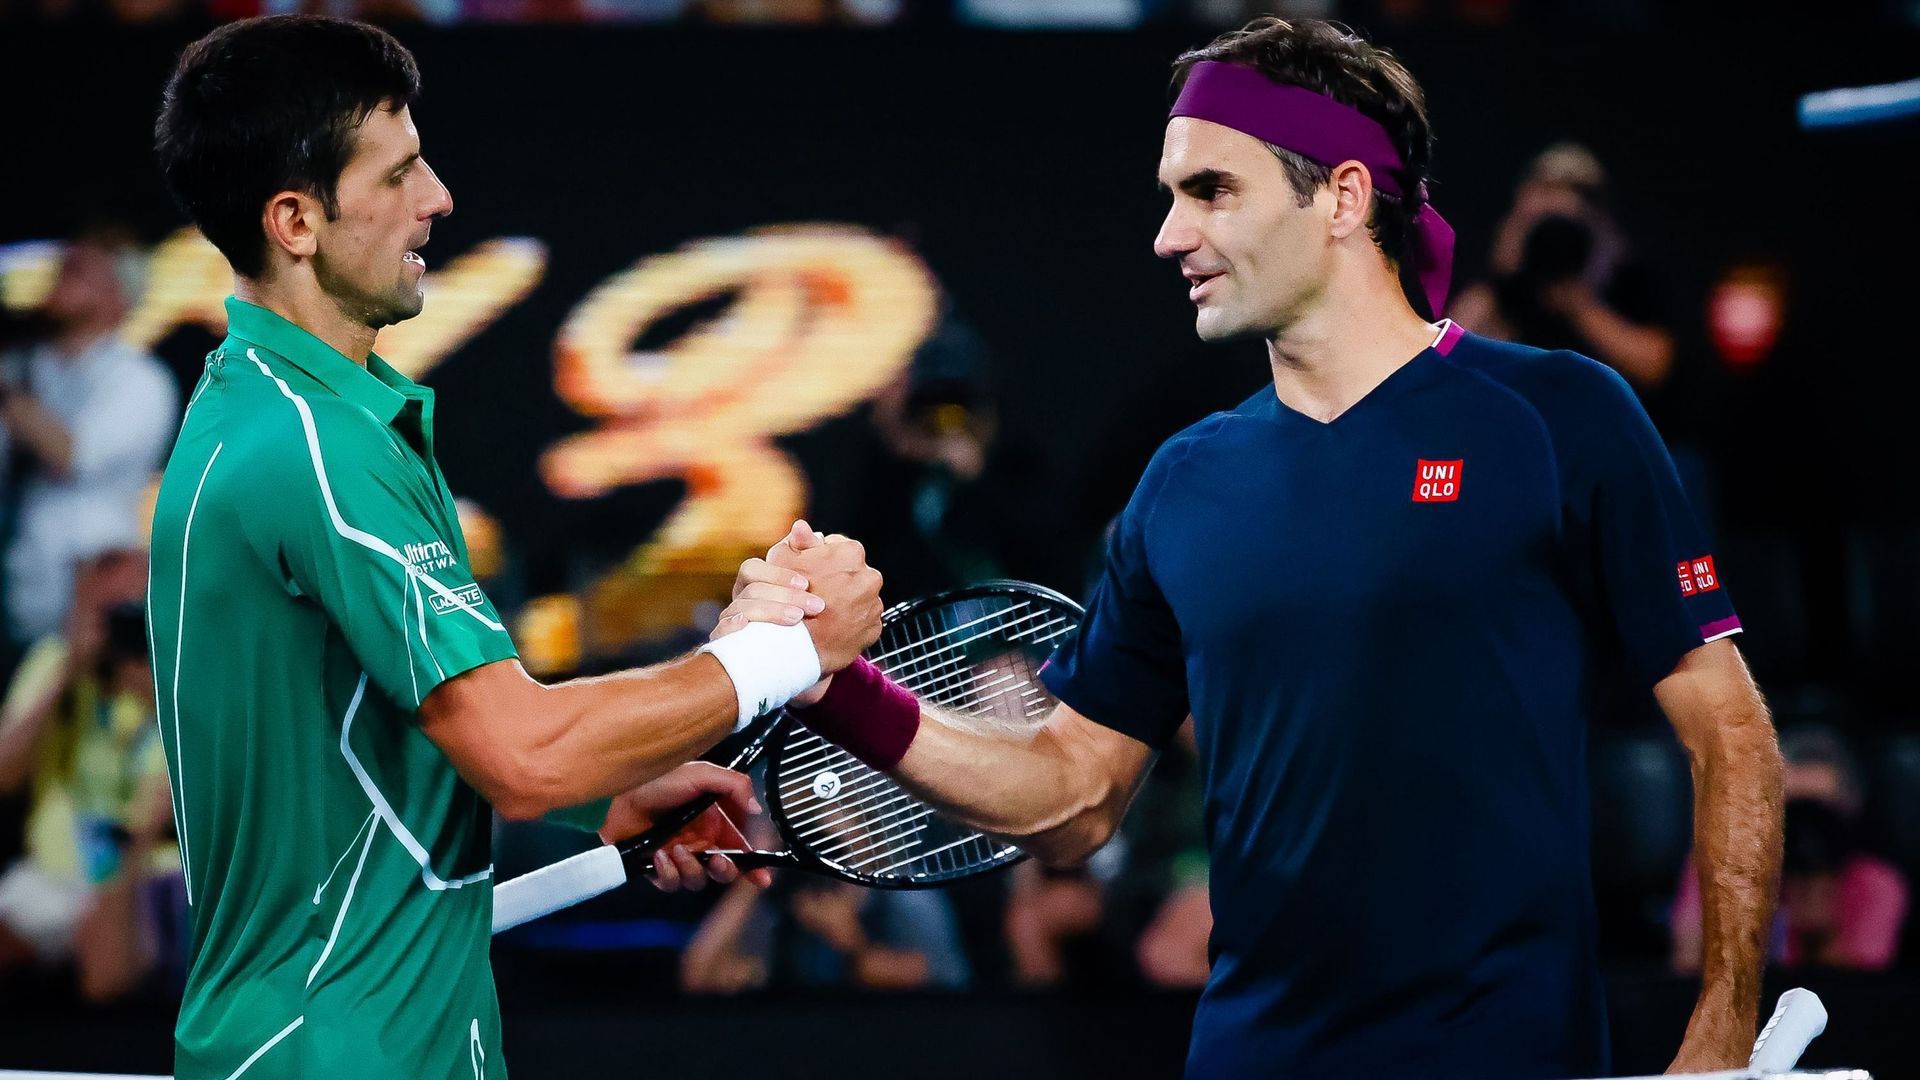 Le Suisse Roger Federer et le Serbe Novak Djokovic ont salué dimanche le 21e titre historique en Grand Chelem de leur rival Rafael Nadal, après sa victoire à l’Open d’Australie, louant notamment son "éthique de travail" et sa "combativité".